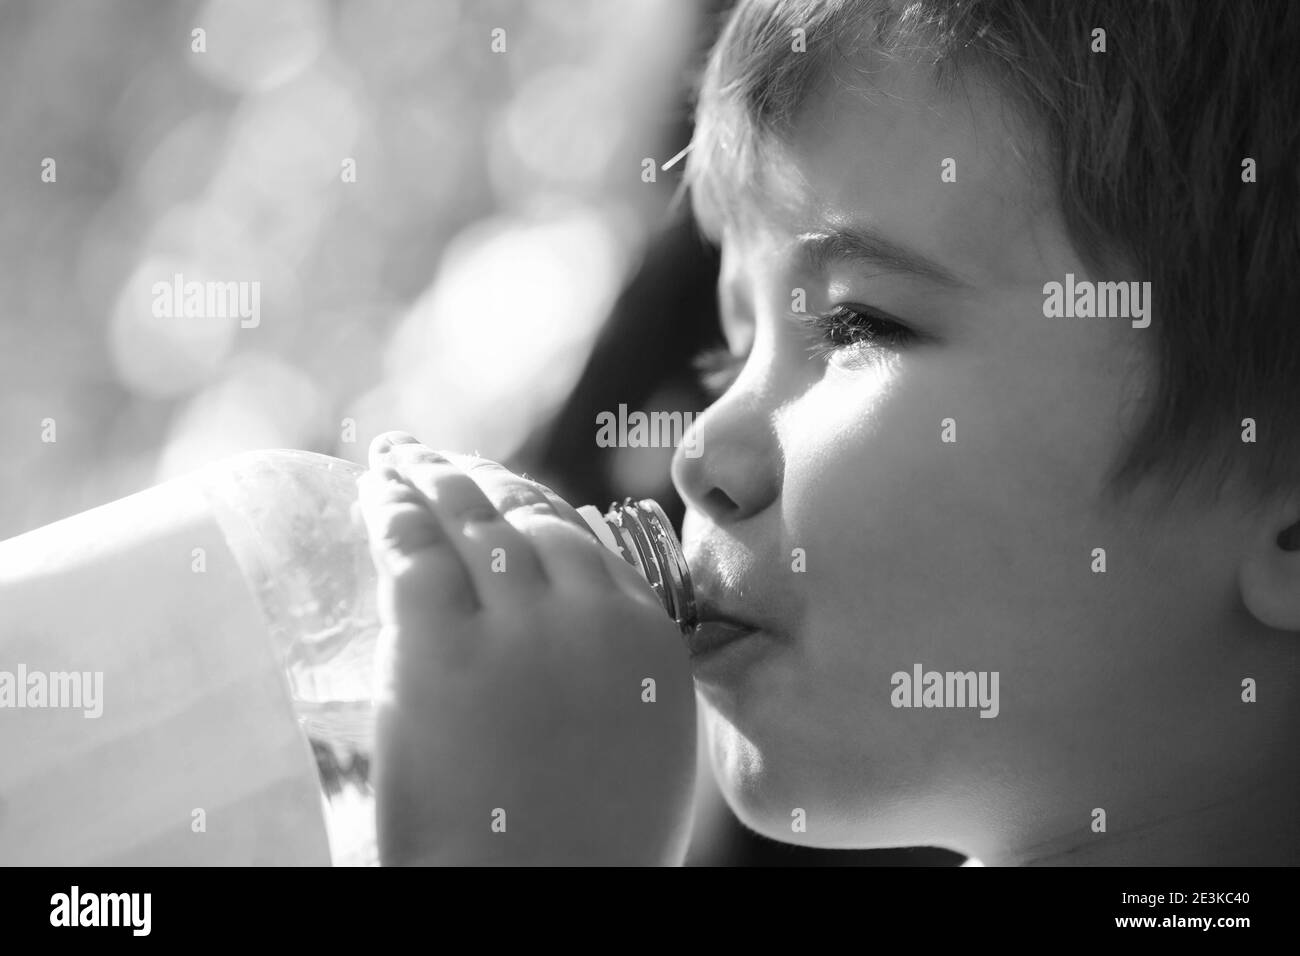 Il bambino beve acqua da una bottiglia mentre cammina, salute del bambino. Bottiglia d'acqua del ragazzo. Bambino che tiene in mano una bottiglia di acqua fresca. Bianco e nero Foto Stock